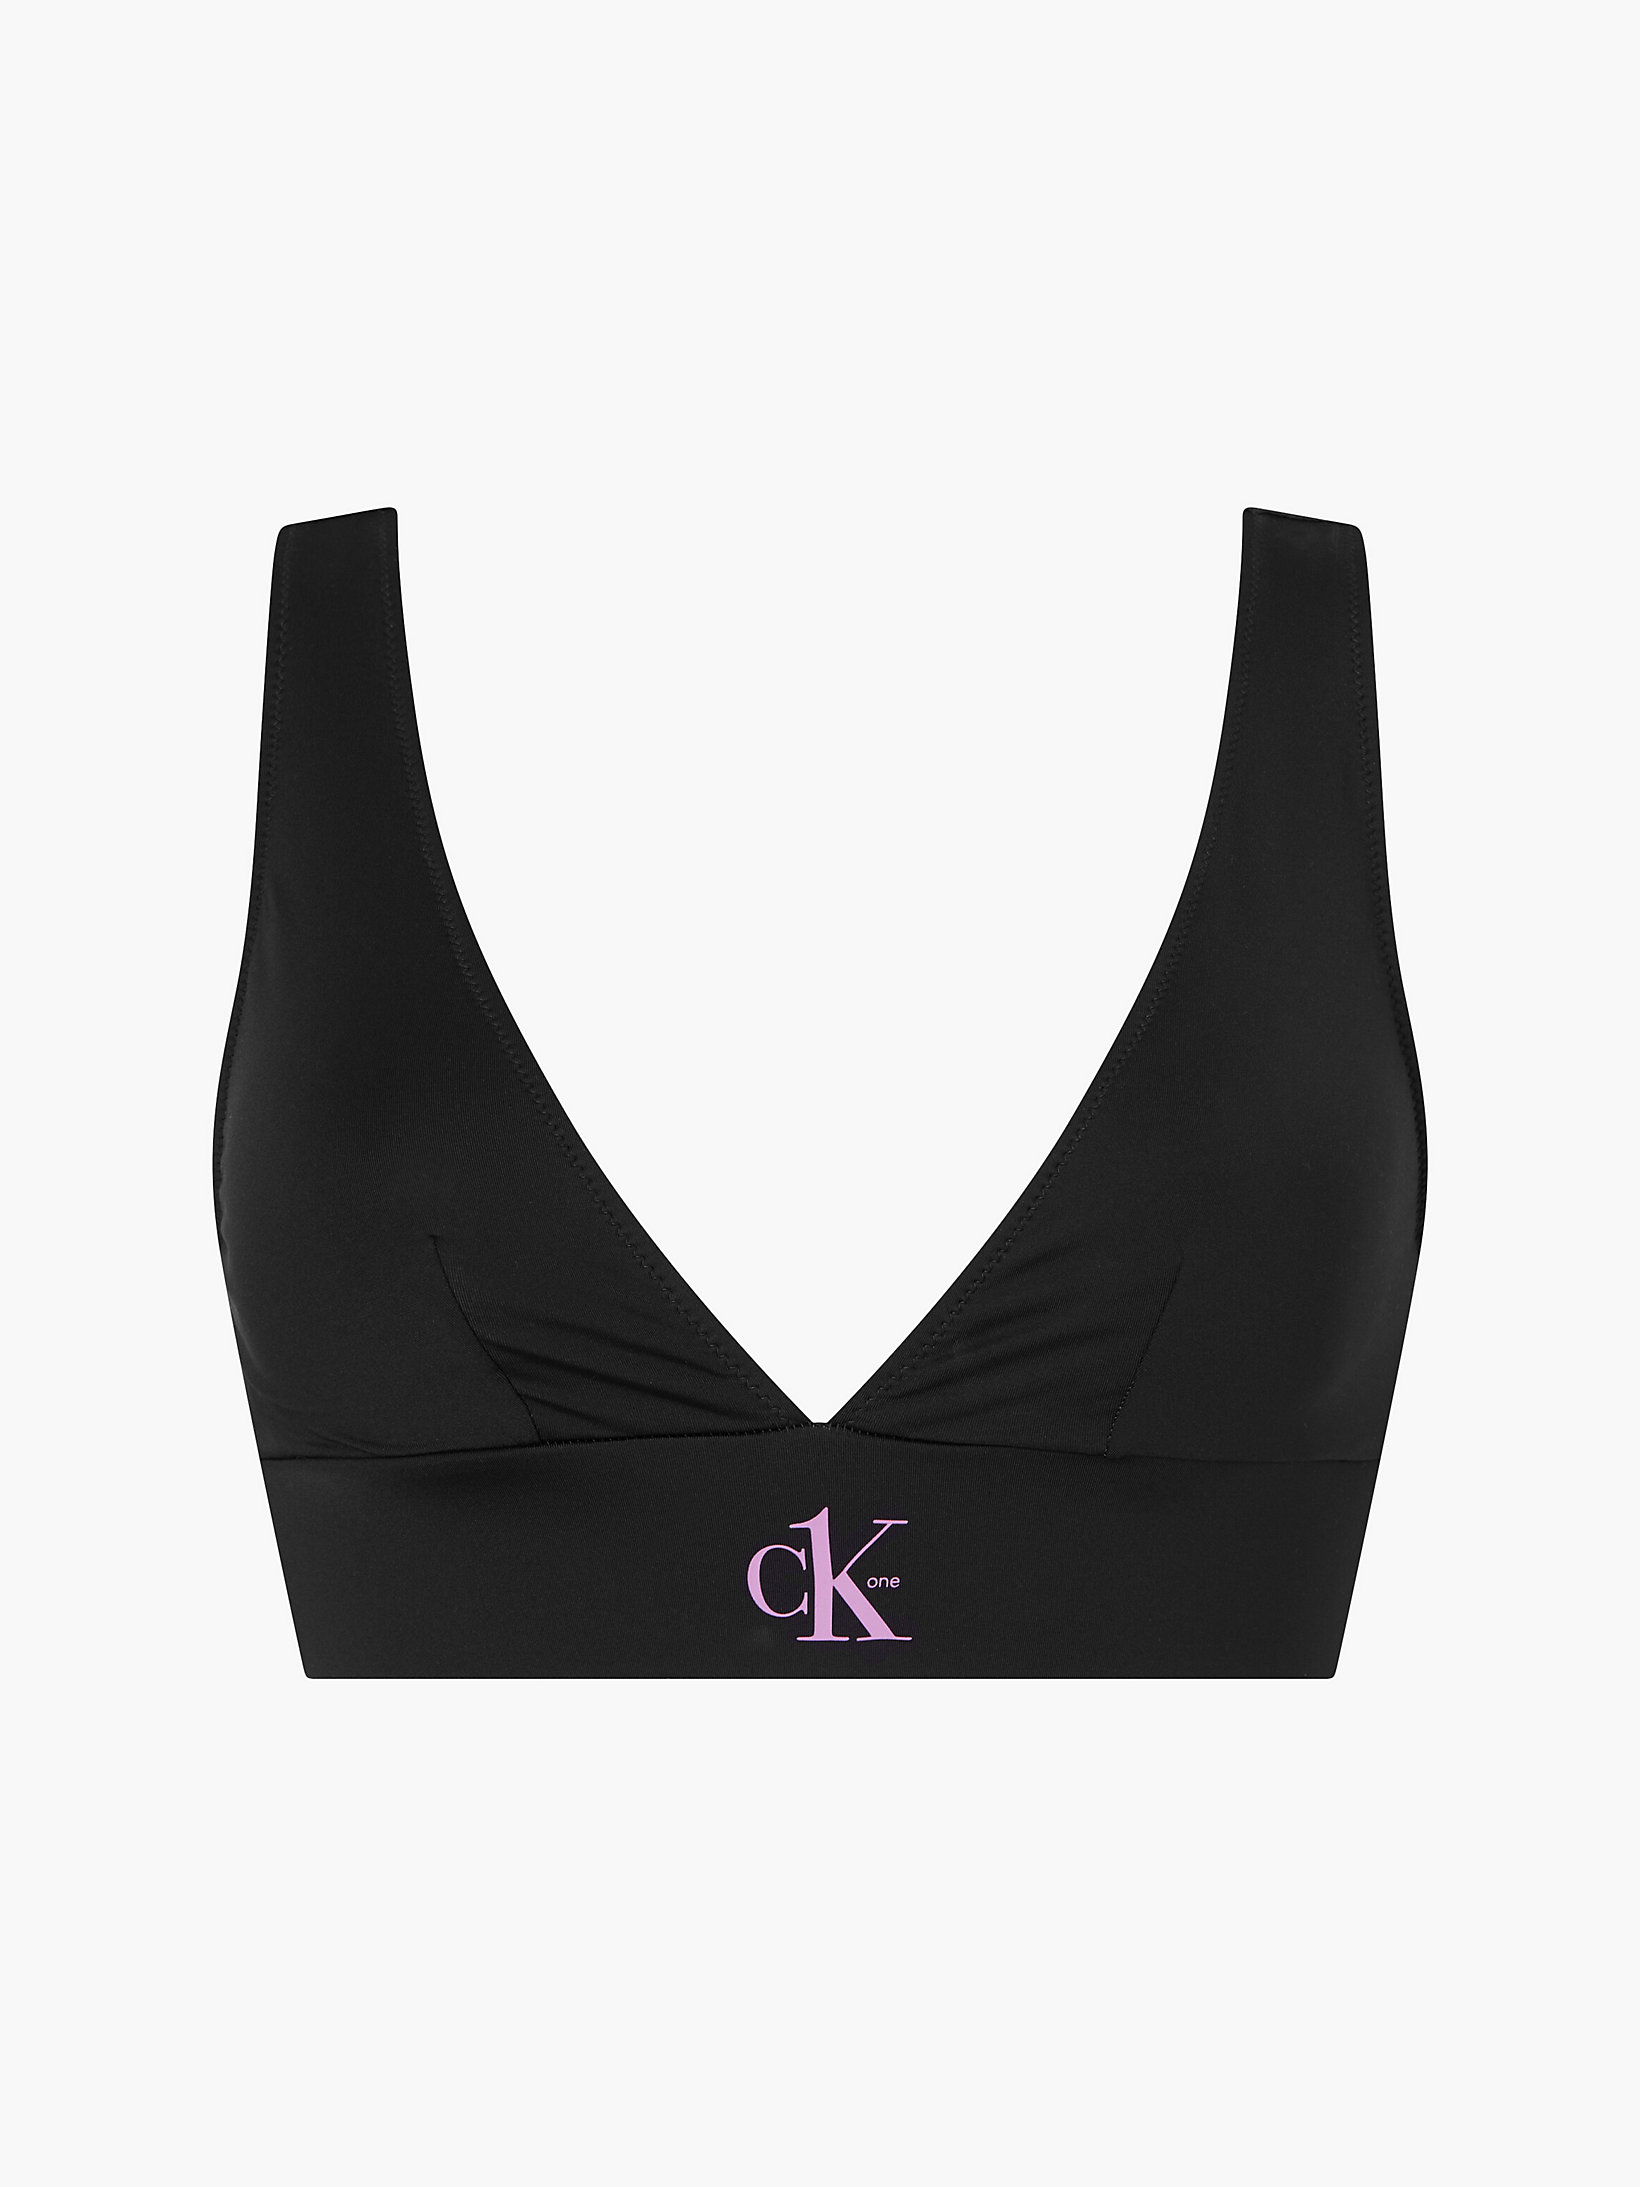 Pvh Black > Bralette Bikinitop - CK One > undefined dames - Calvin Klein